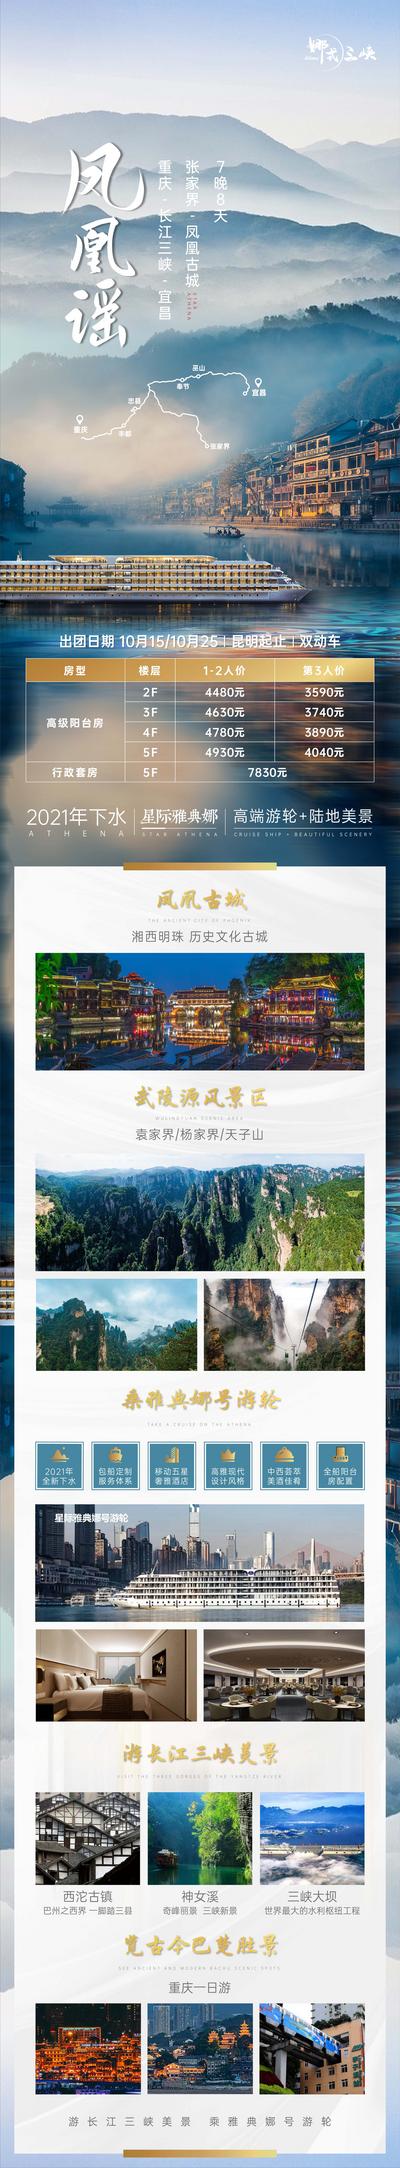 南门网 海报 旅游 重庆 长江 三峡 星际 雅典娜 游轮 凤凰 古城